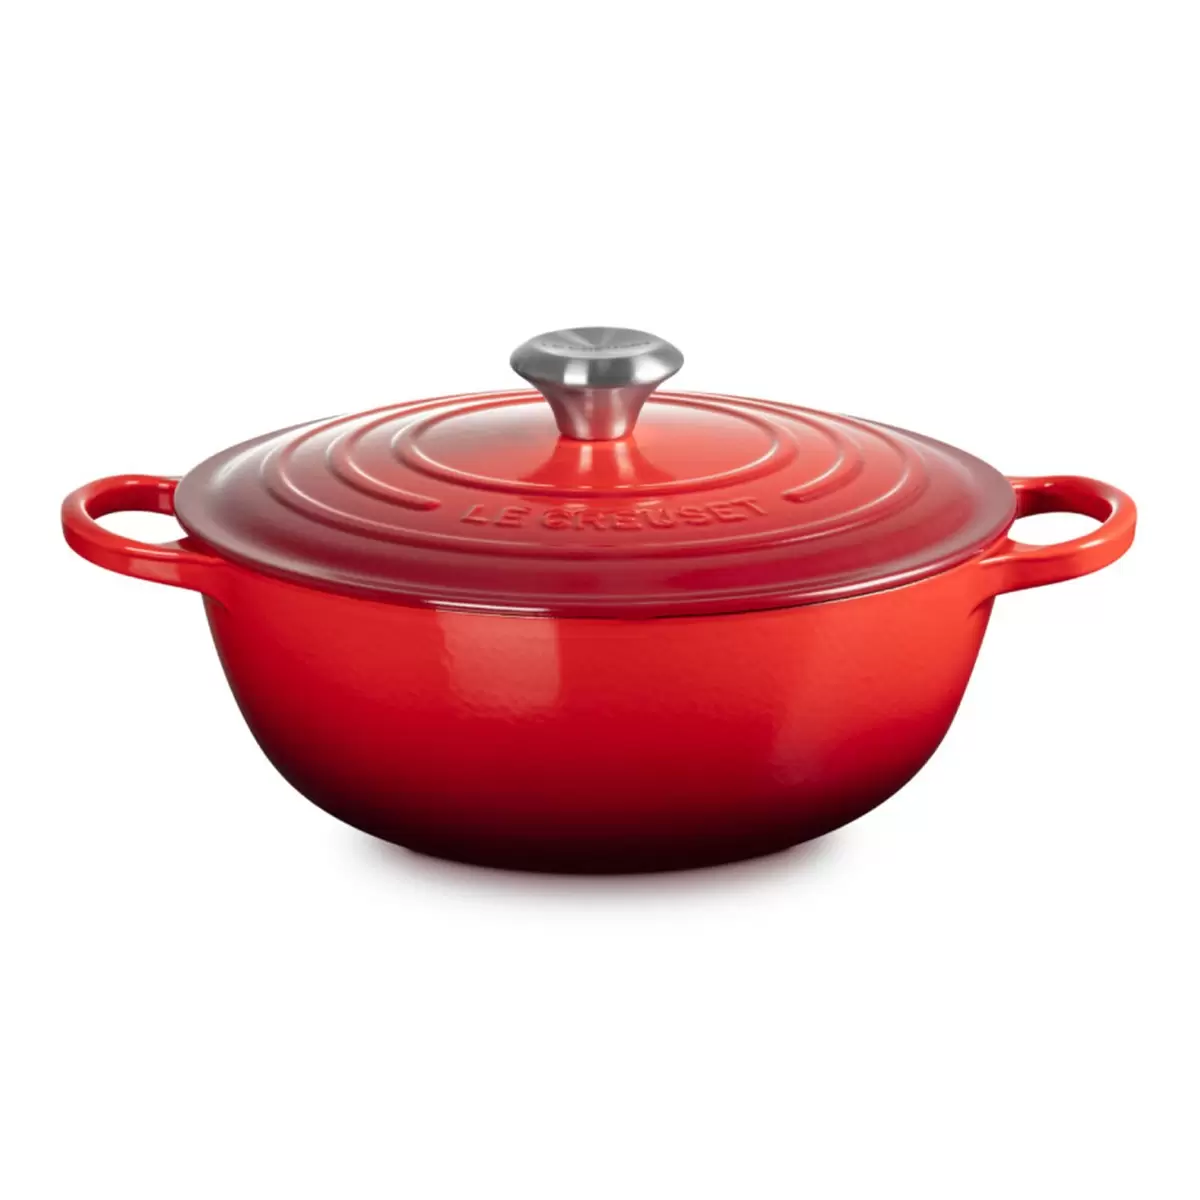 Le Creuset 琺瑯鑄鐵媽咪鍋 含鋼頭鍋蓋 28公分 櫻桃紅